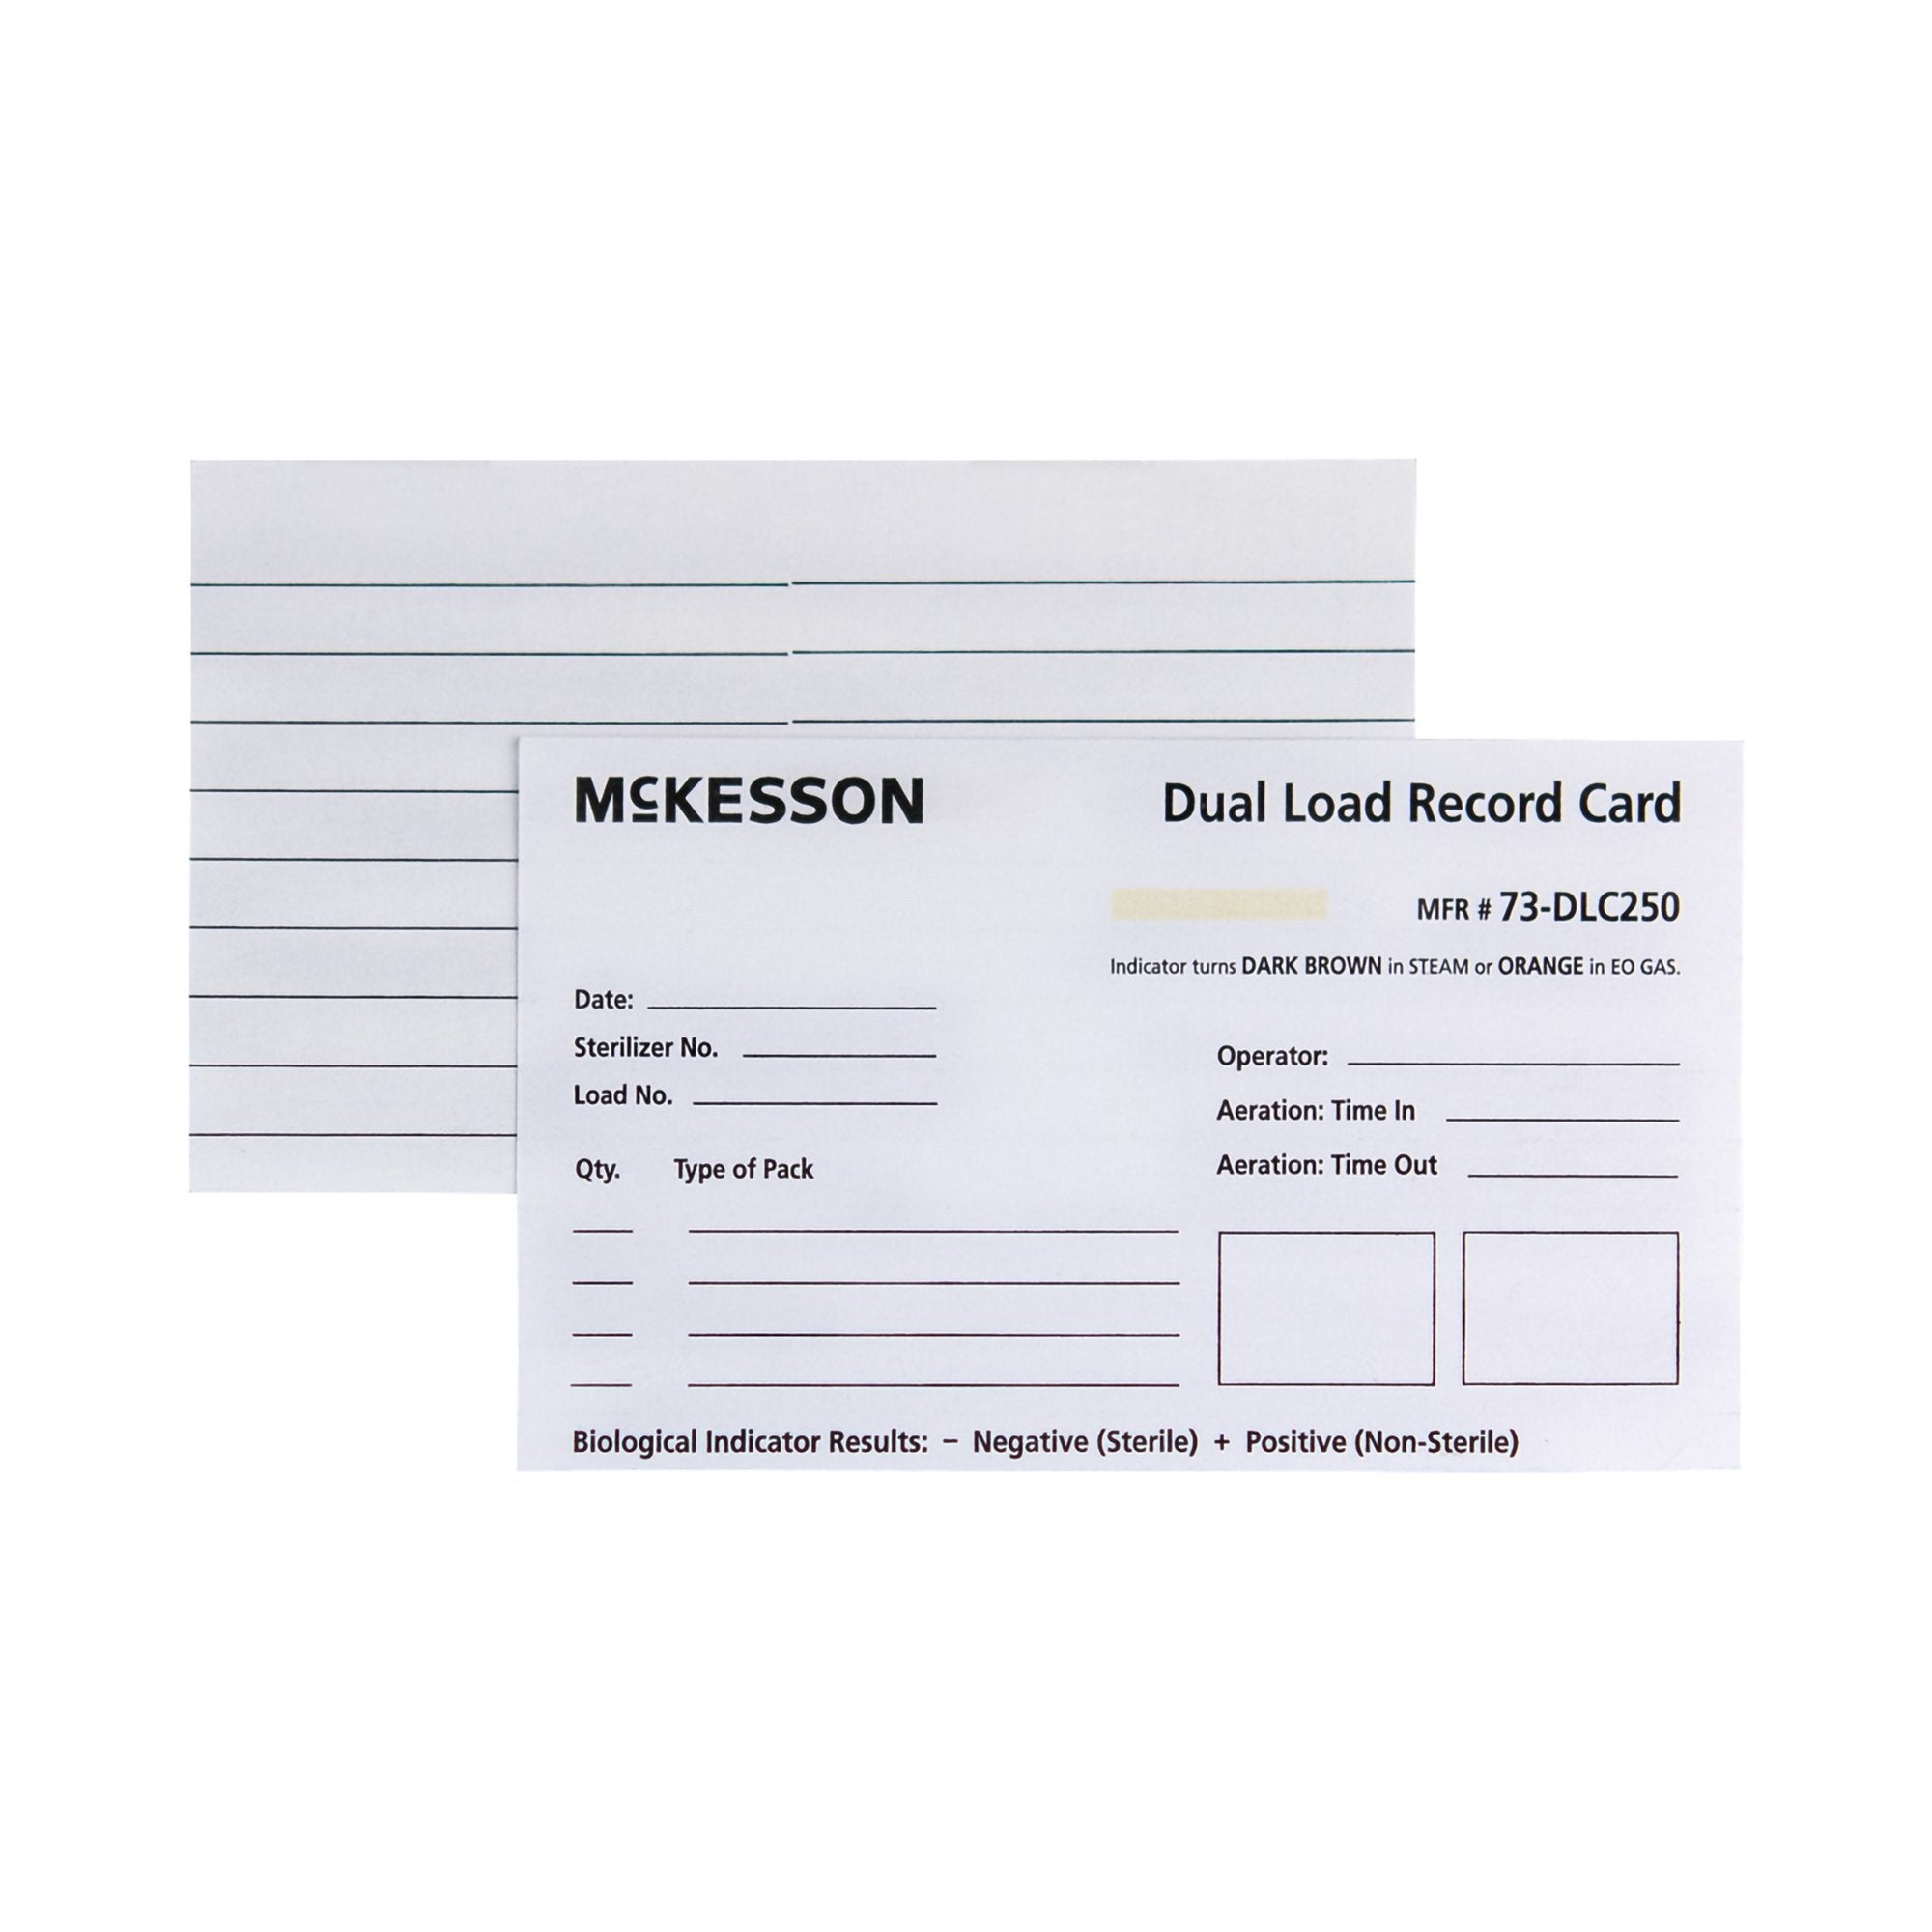 Sterilization Record Card McKesson Steam / EO Gas